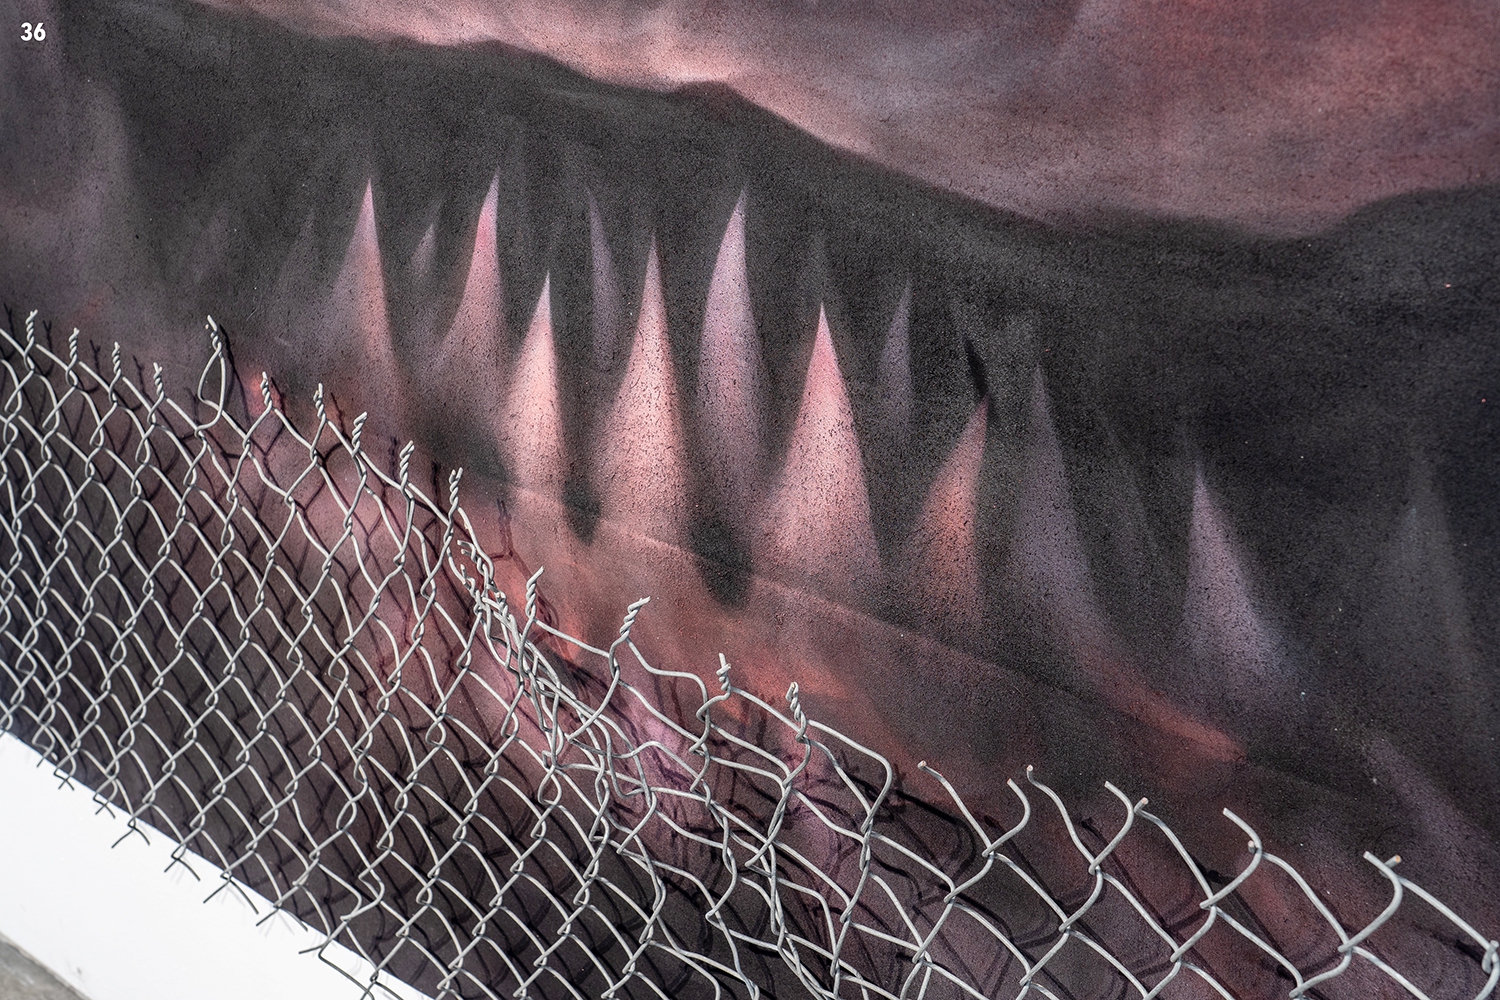 Qinru (Trespass) by Shark Toof, detail